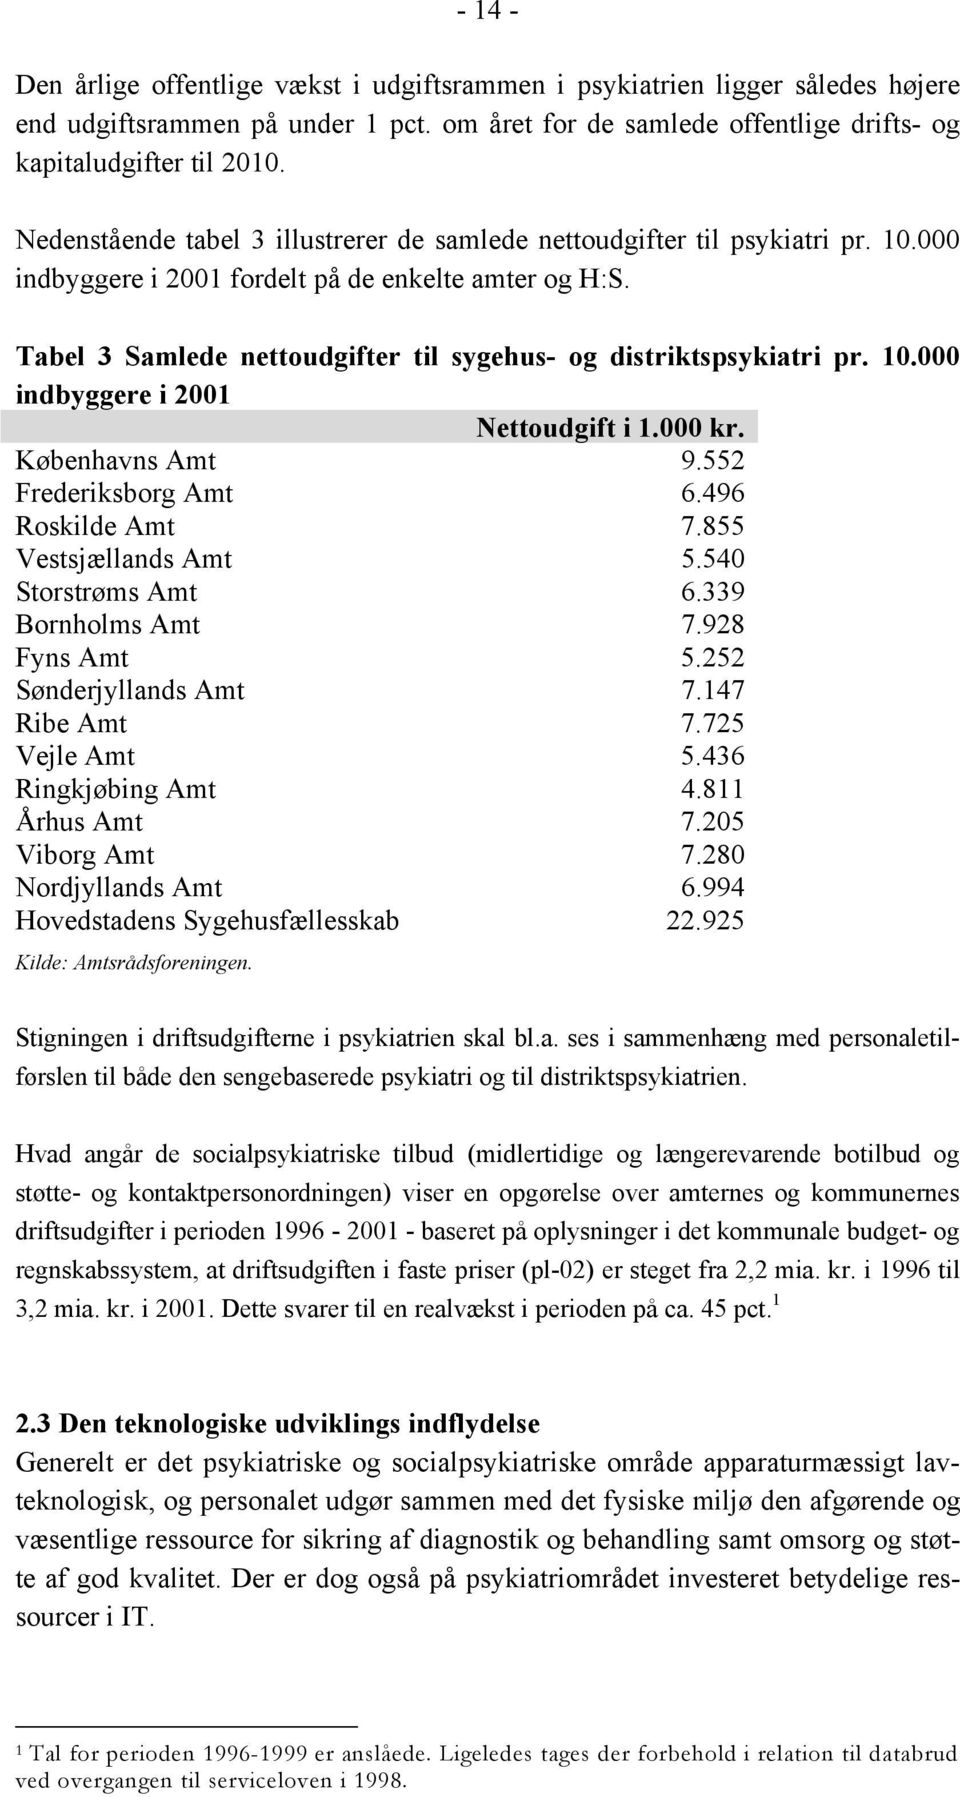 Tabel 3 Samlede nettoudgifter til sygehus- og distriktspsykiatri pr. 10.000 indbyggere i 2001 Nettoudgift i 1.000 kr. Københavns Amt 9.552 Frederiksborg Amt 6.496 Roskilde Amt 7.